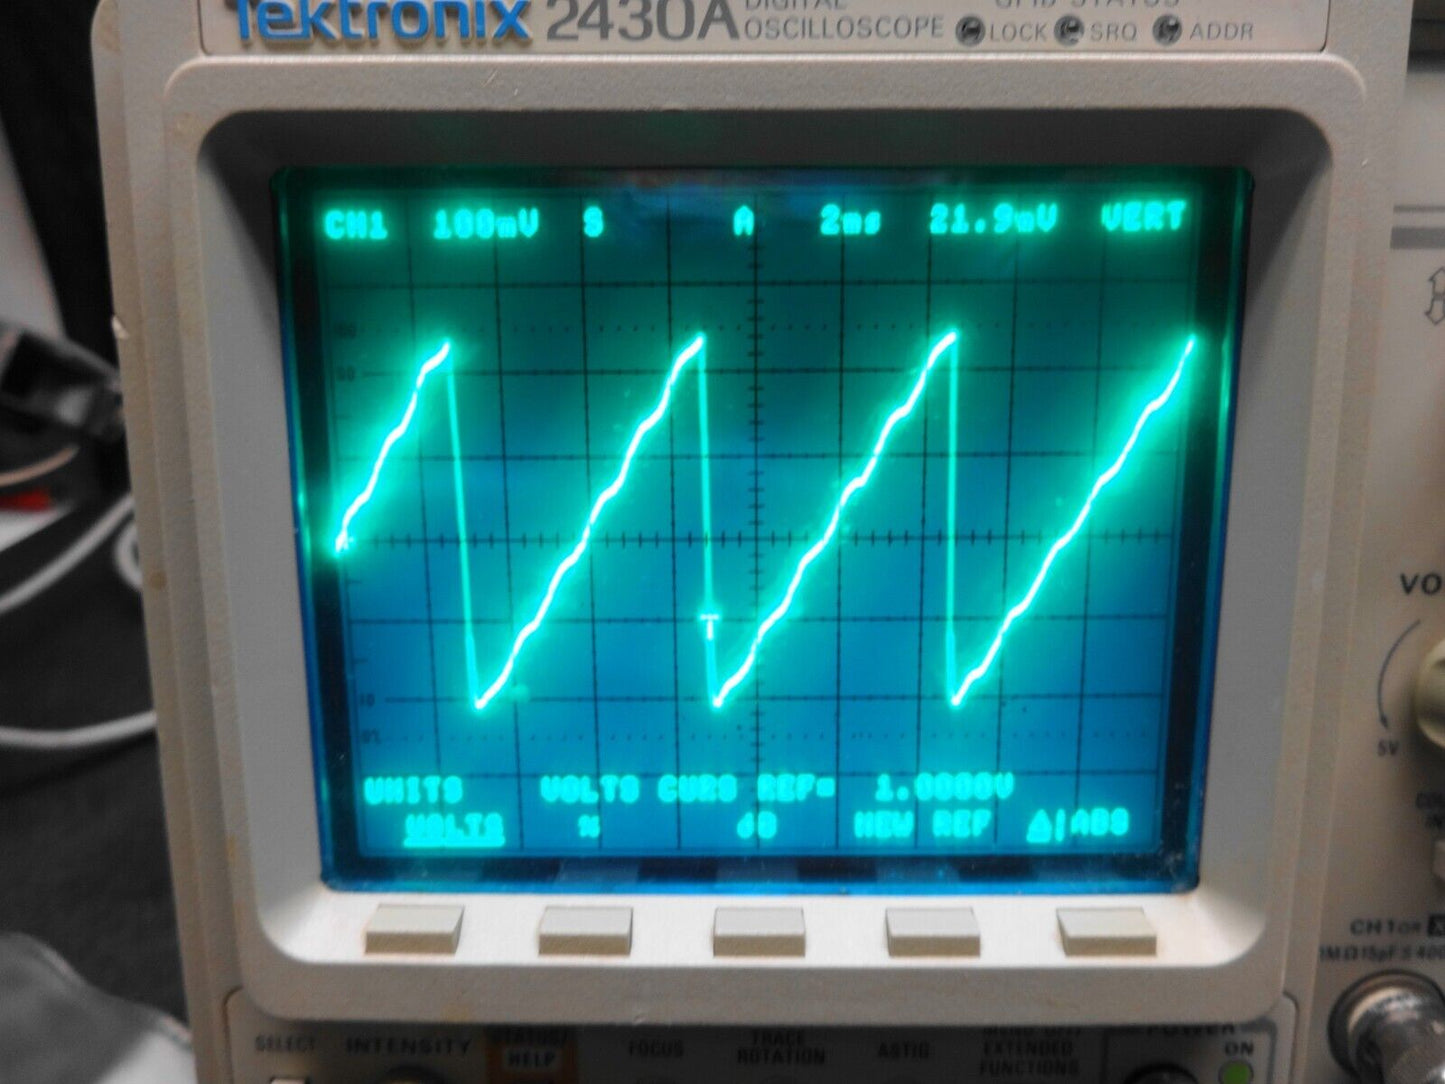 Tektronix 2430A Digital Oscilloscope w/ Probes